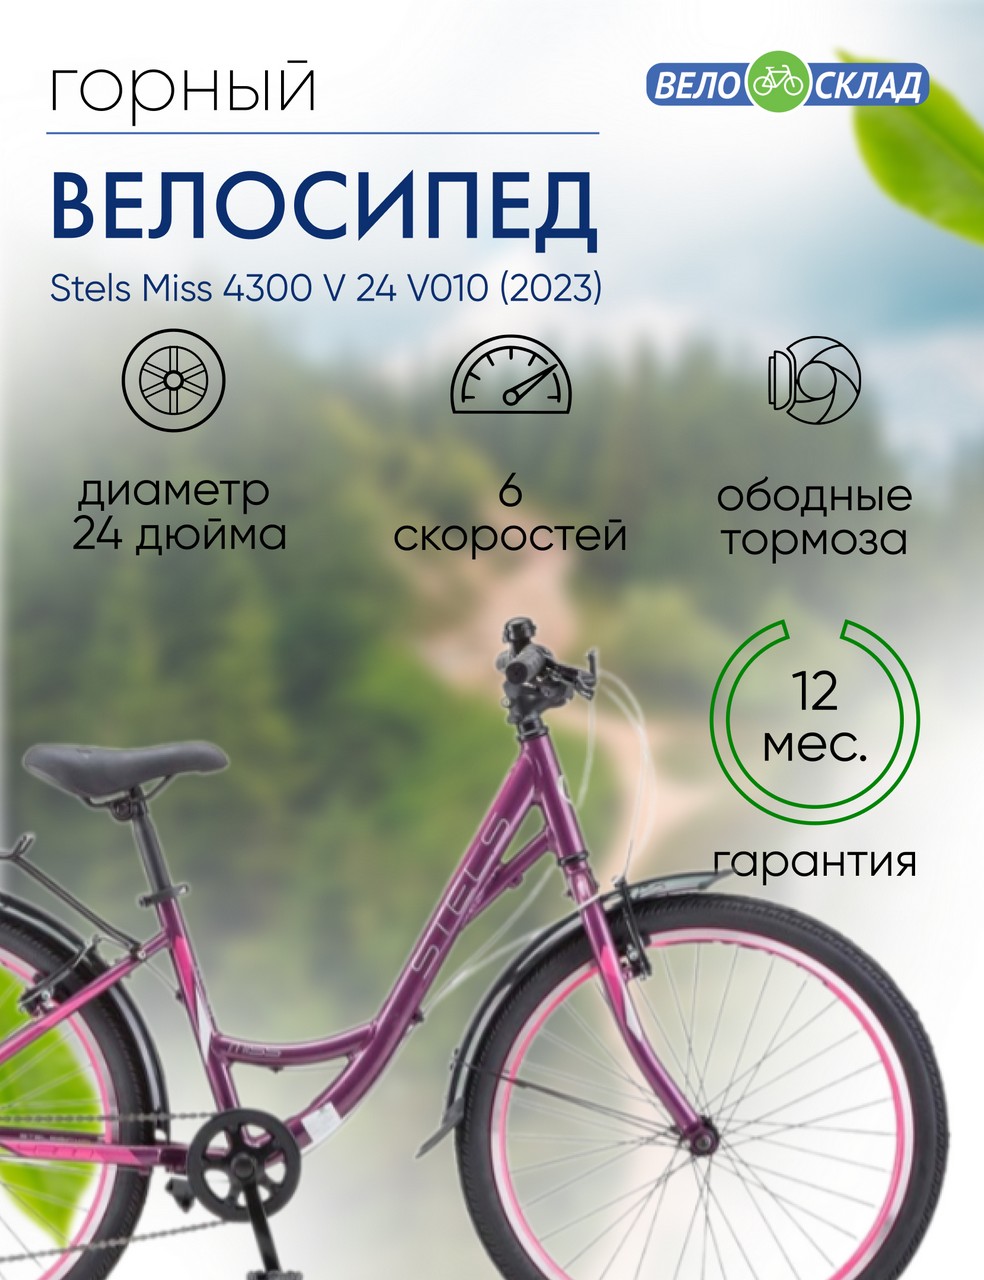 Подростковый велосипед Stels Miss 4300 V 24 V010, год 2023, цвет Фиолетовый-Розовый, ростовка 14